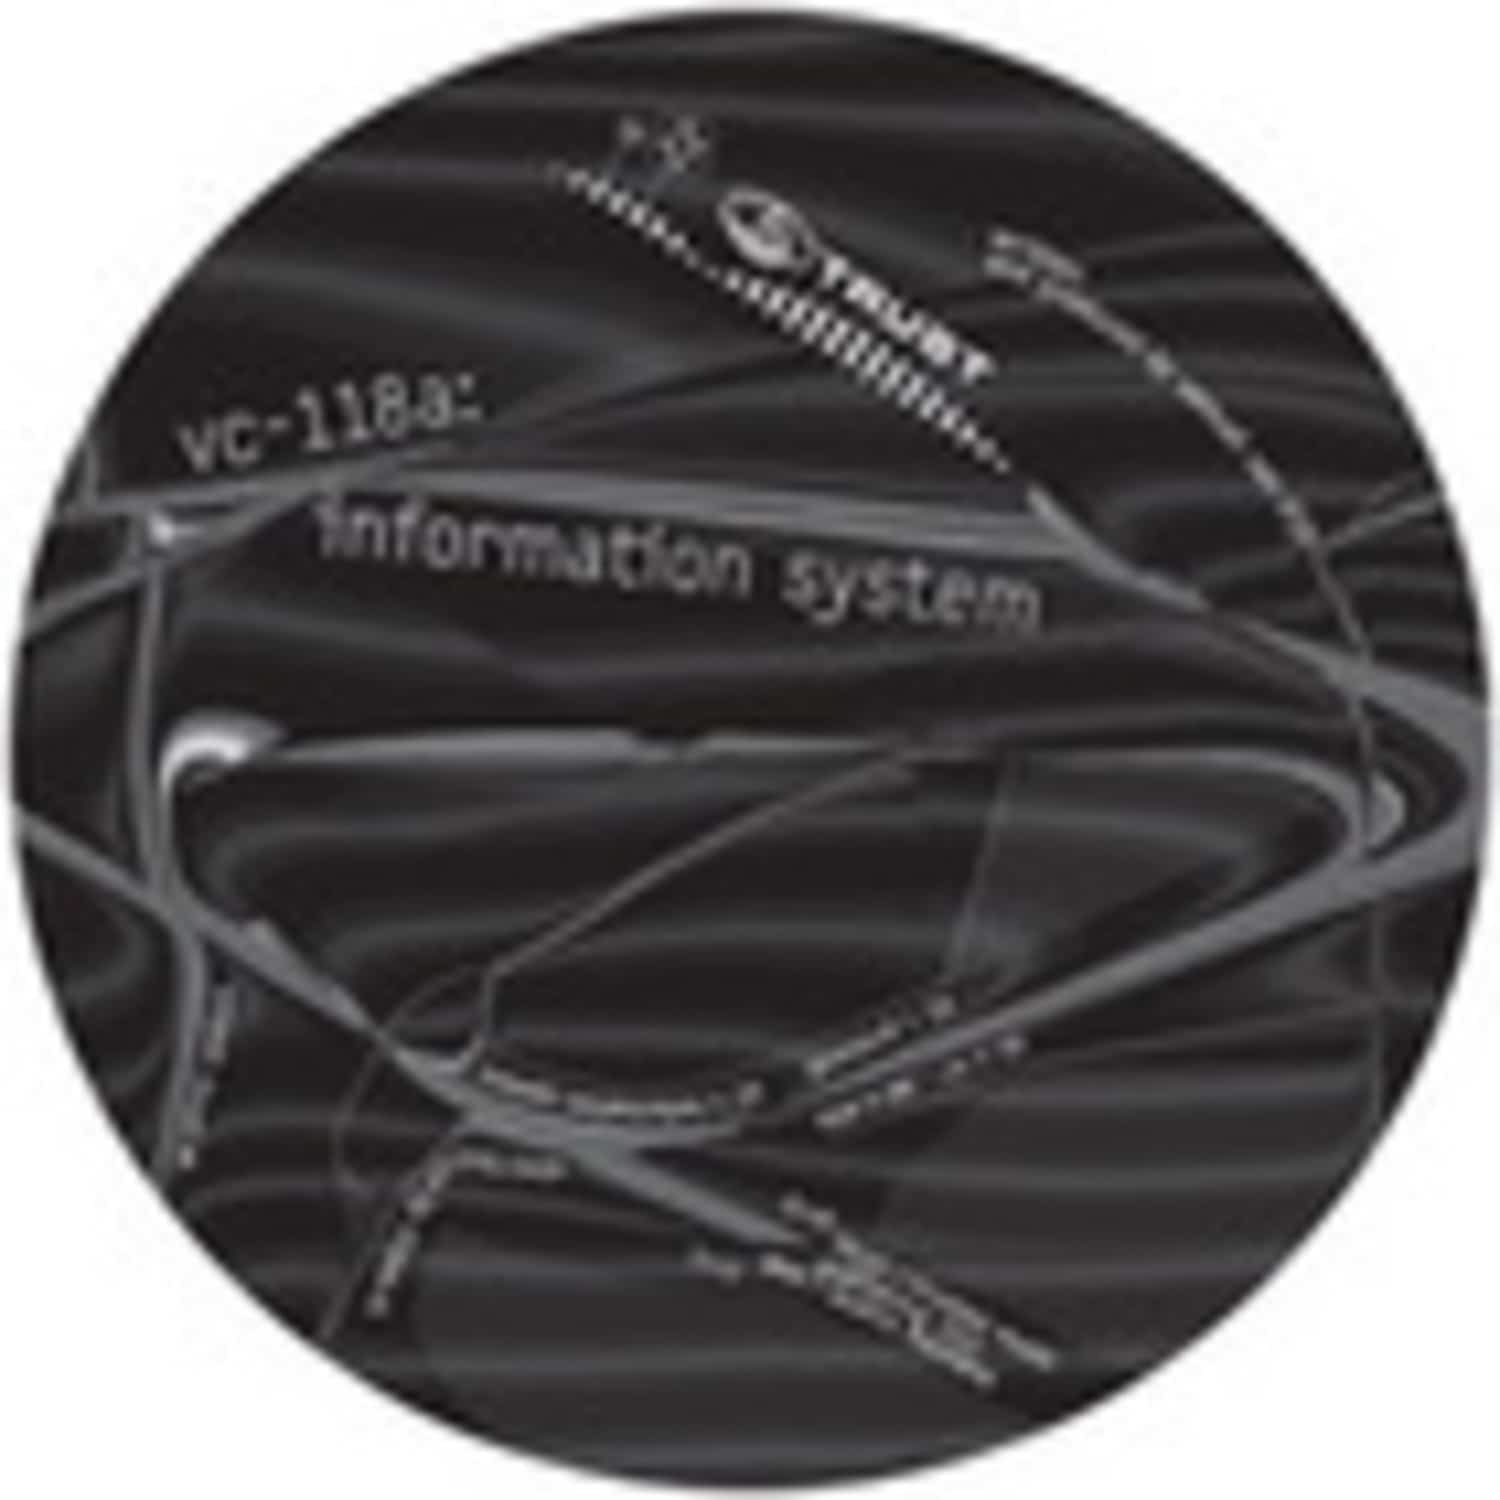 Vc-118A - INFORMATION SYSTEM